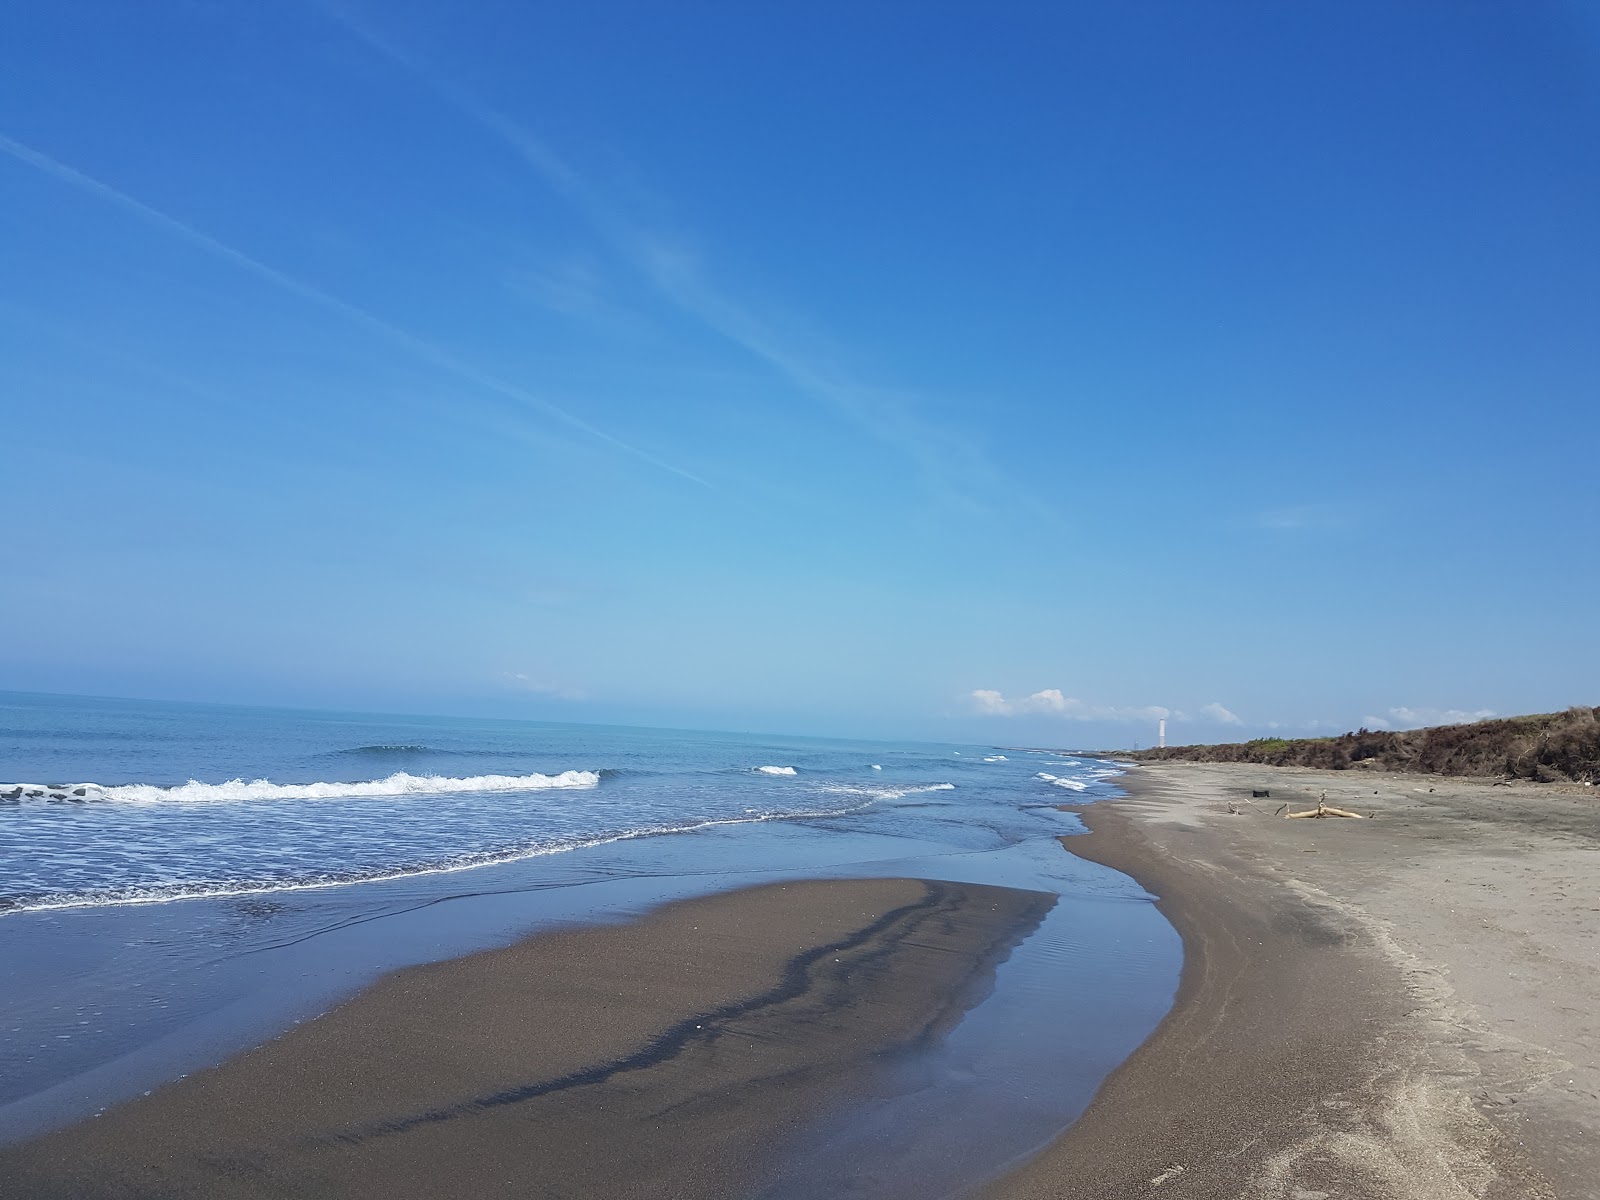 Foto de Montalto Marina beach II com areia marrom superfície